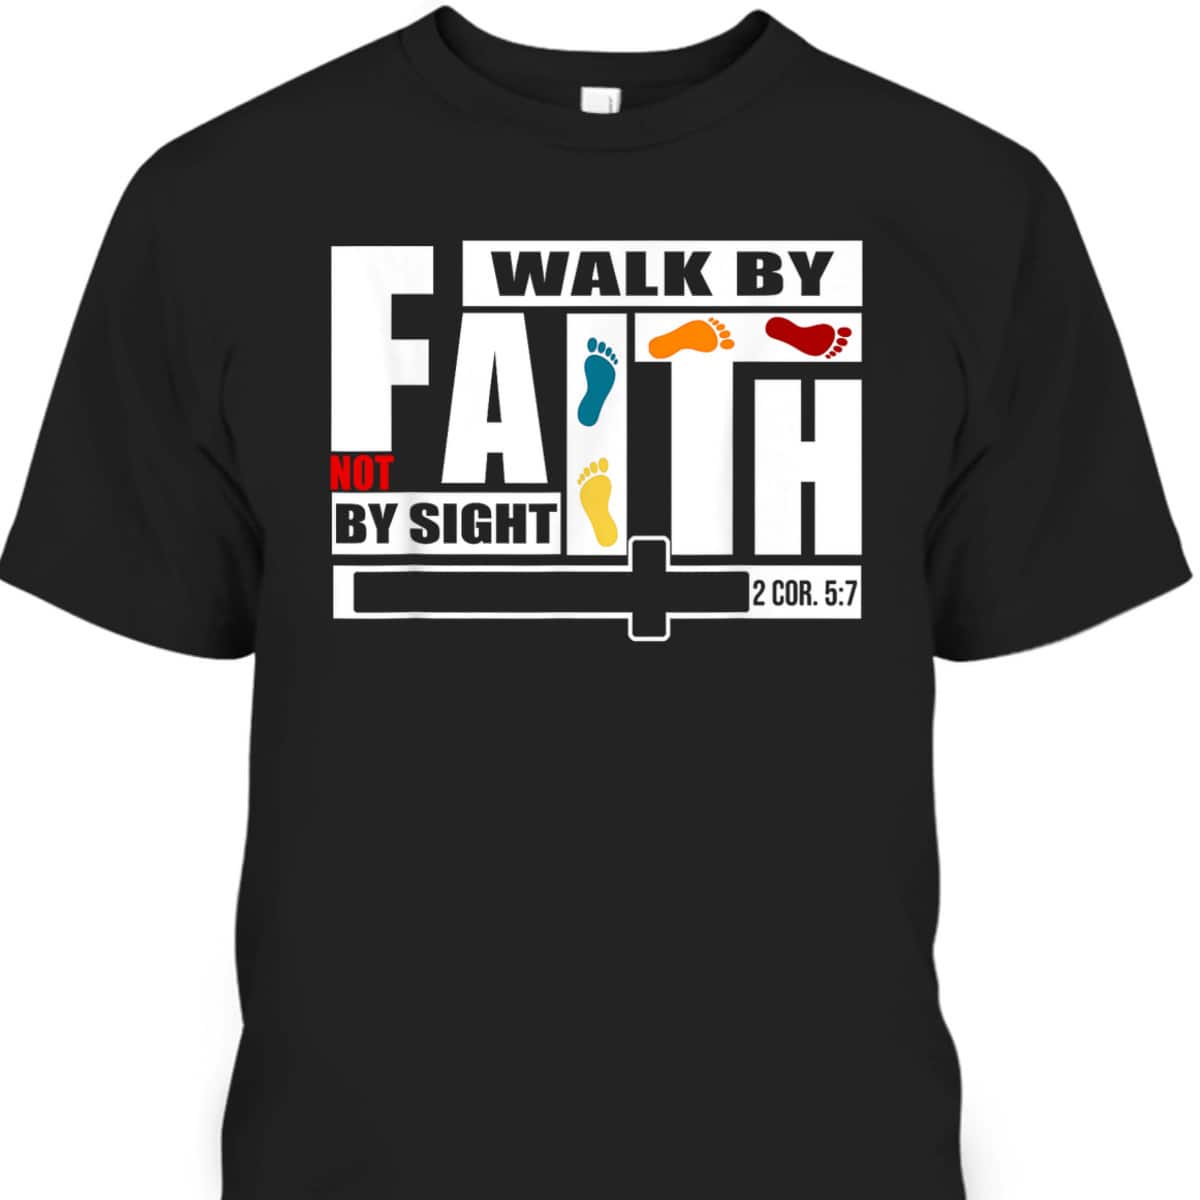 FaithWalk By Faith Not By Sight T-Shirt